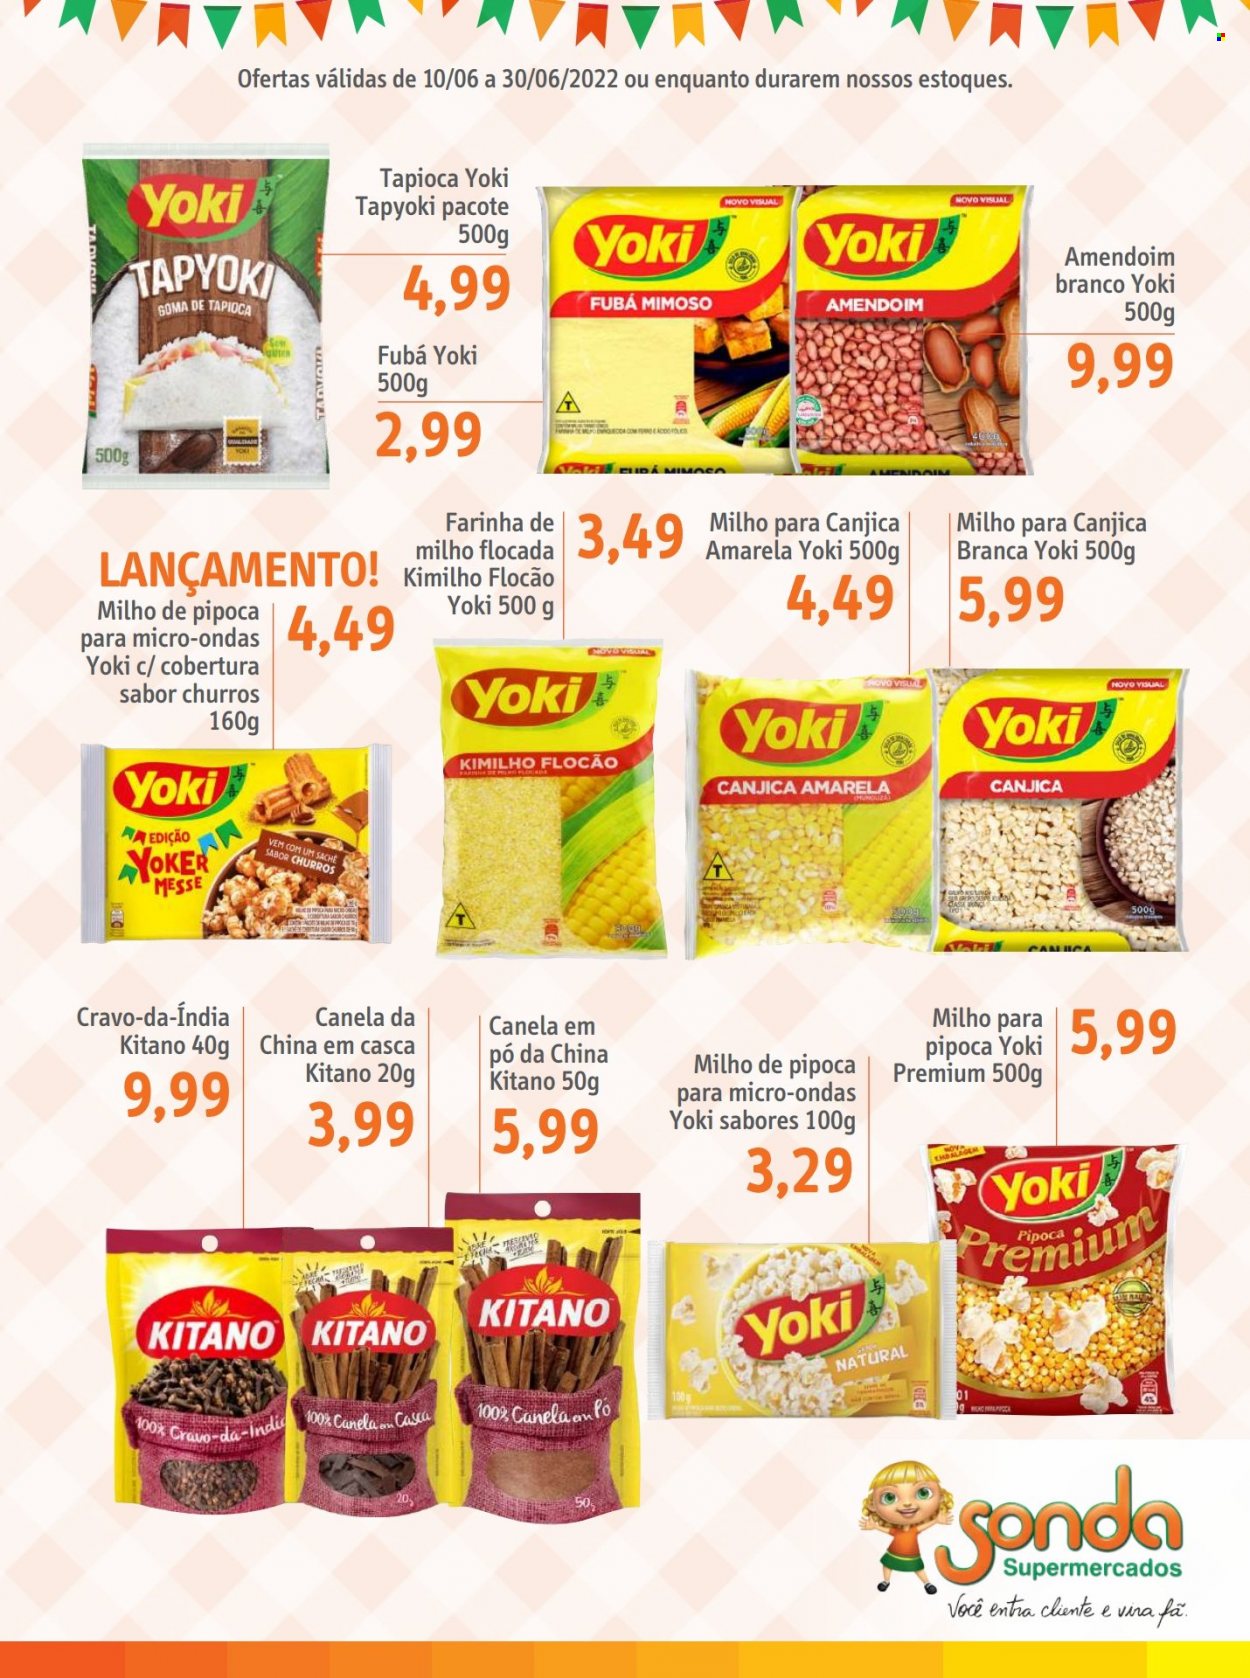 thumbnail - Folheto Sonda Supermercados - 10/06/2022 - 30/06/2022 - Produtos em promoção - churros, Yoki, farinha, canjica, tapioca, amendoim. Página 5.